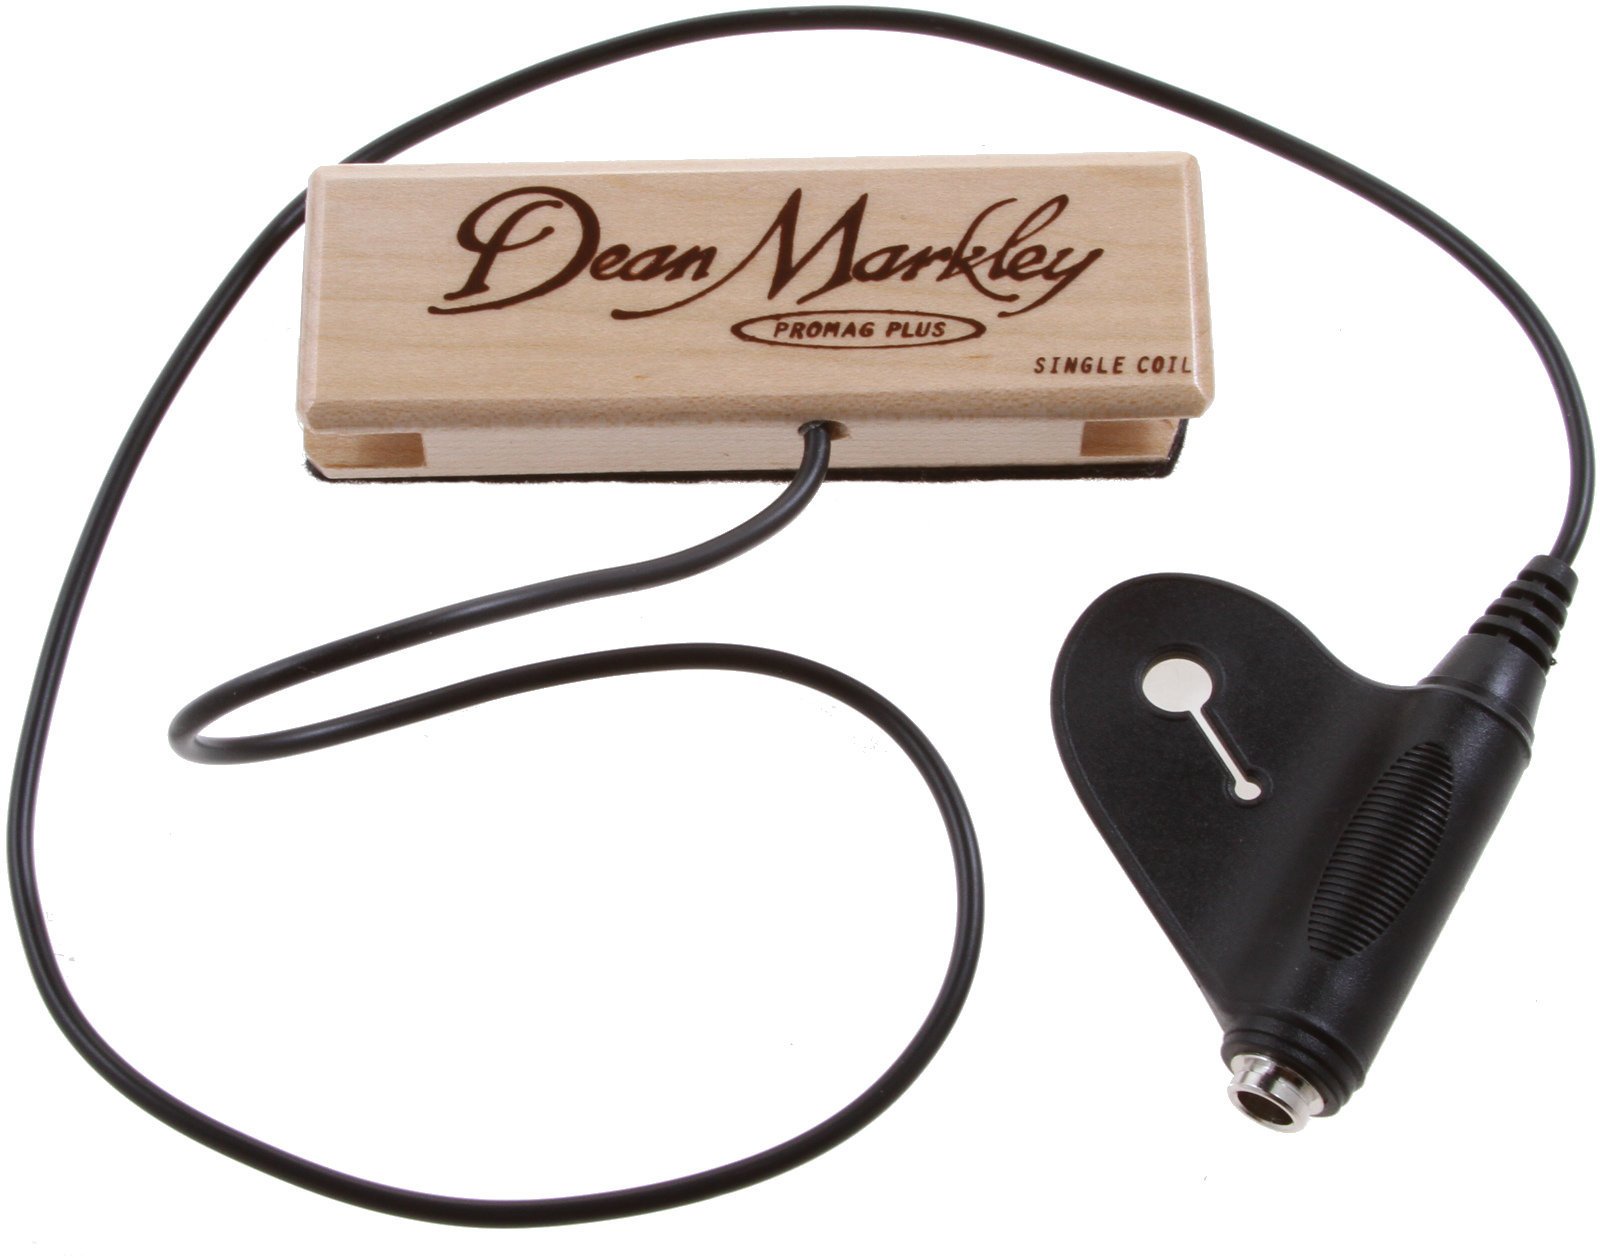 Адаптер за акустична китара Dean Markley 3011 ProMag Plus XM